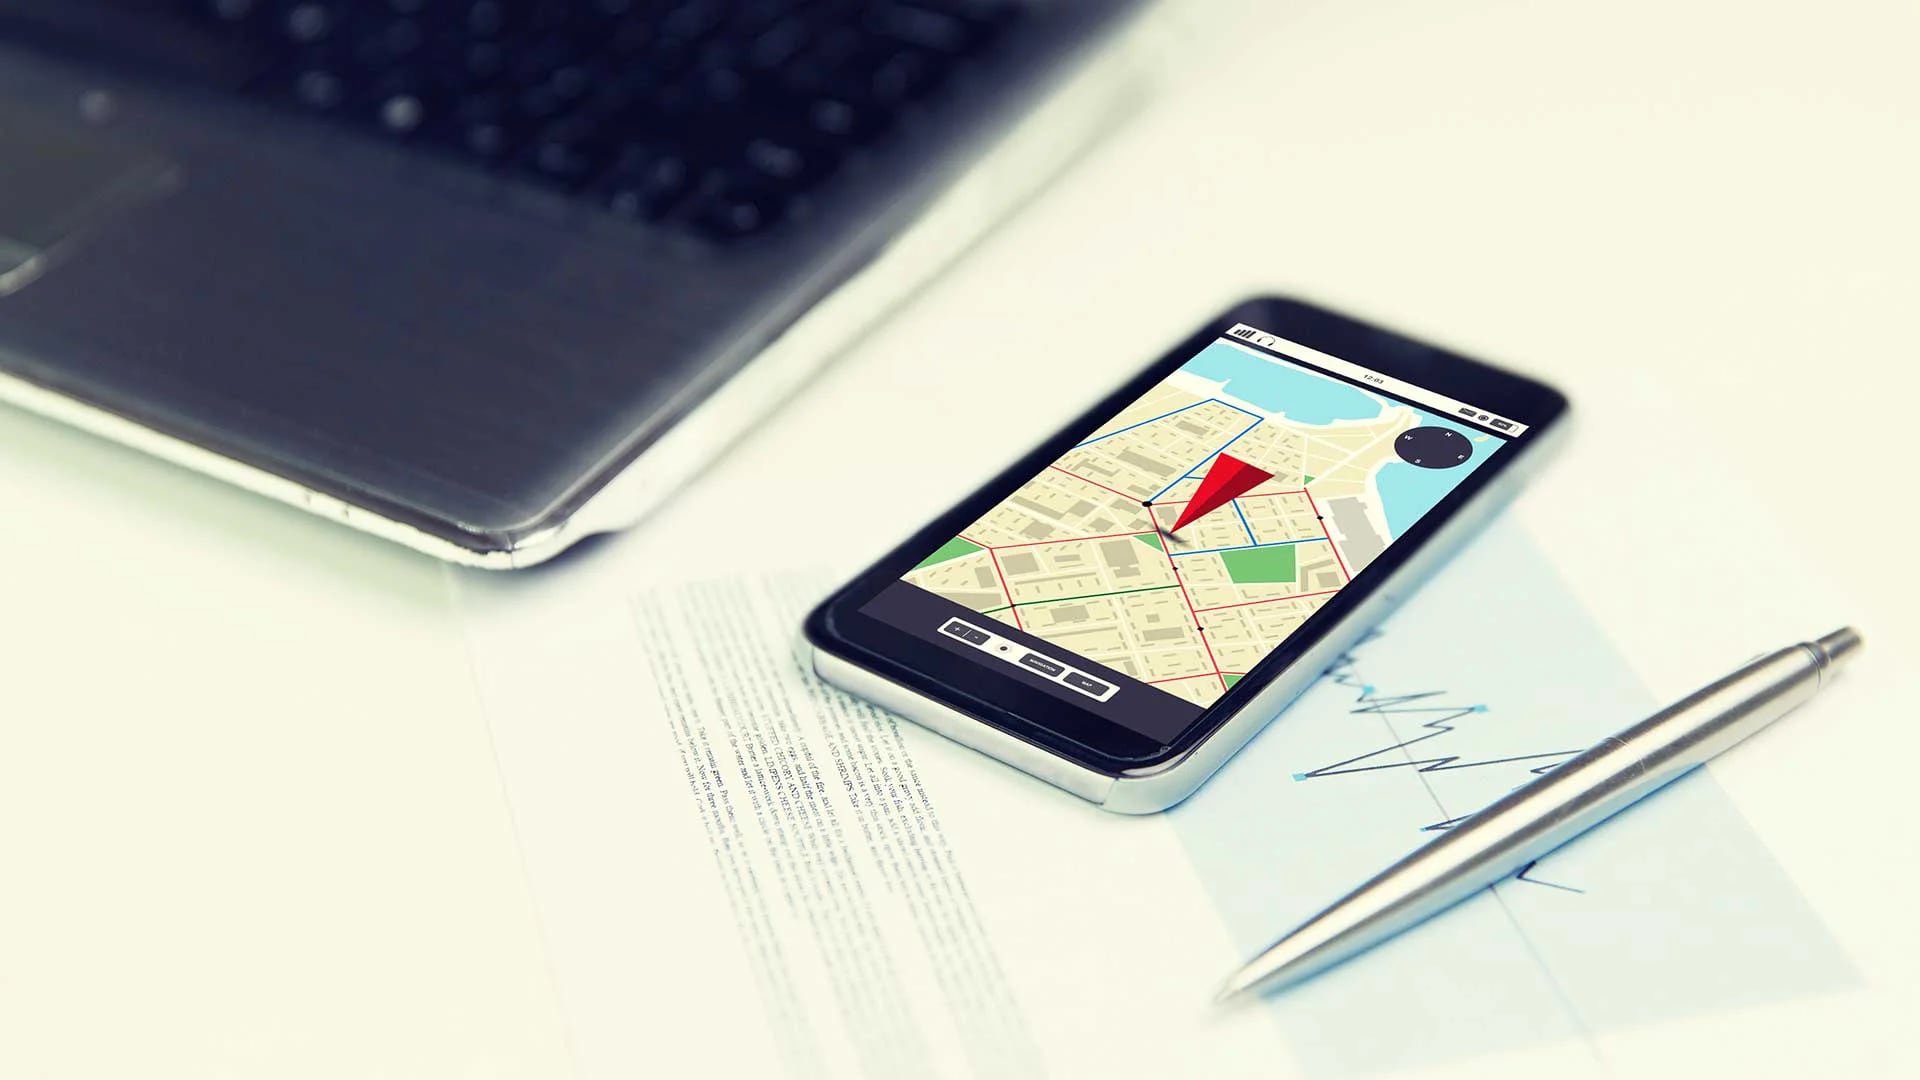 Los servicios de geolocalización archivan muchísima información personal de sus usuarios (Shutterstock)